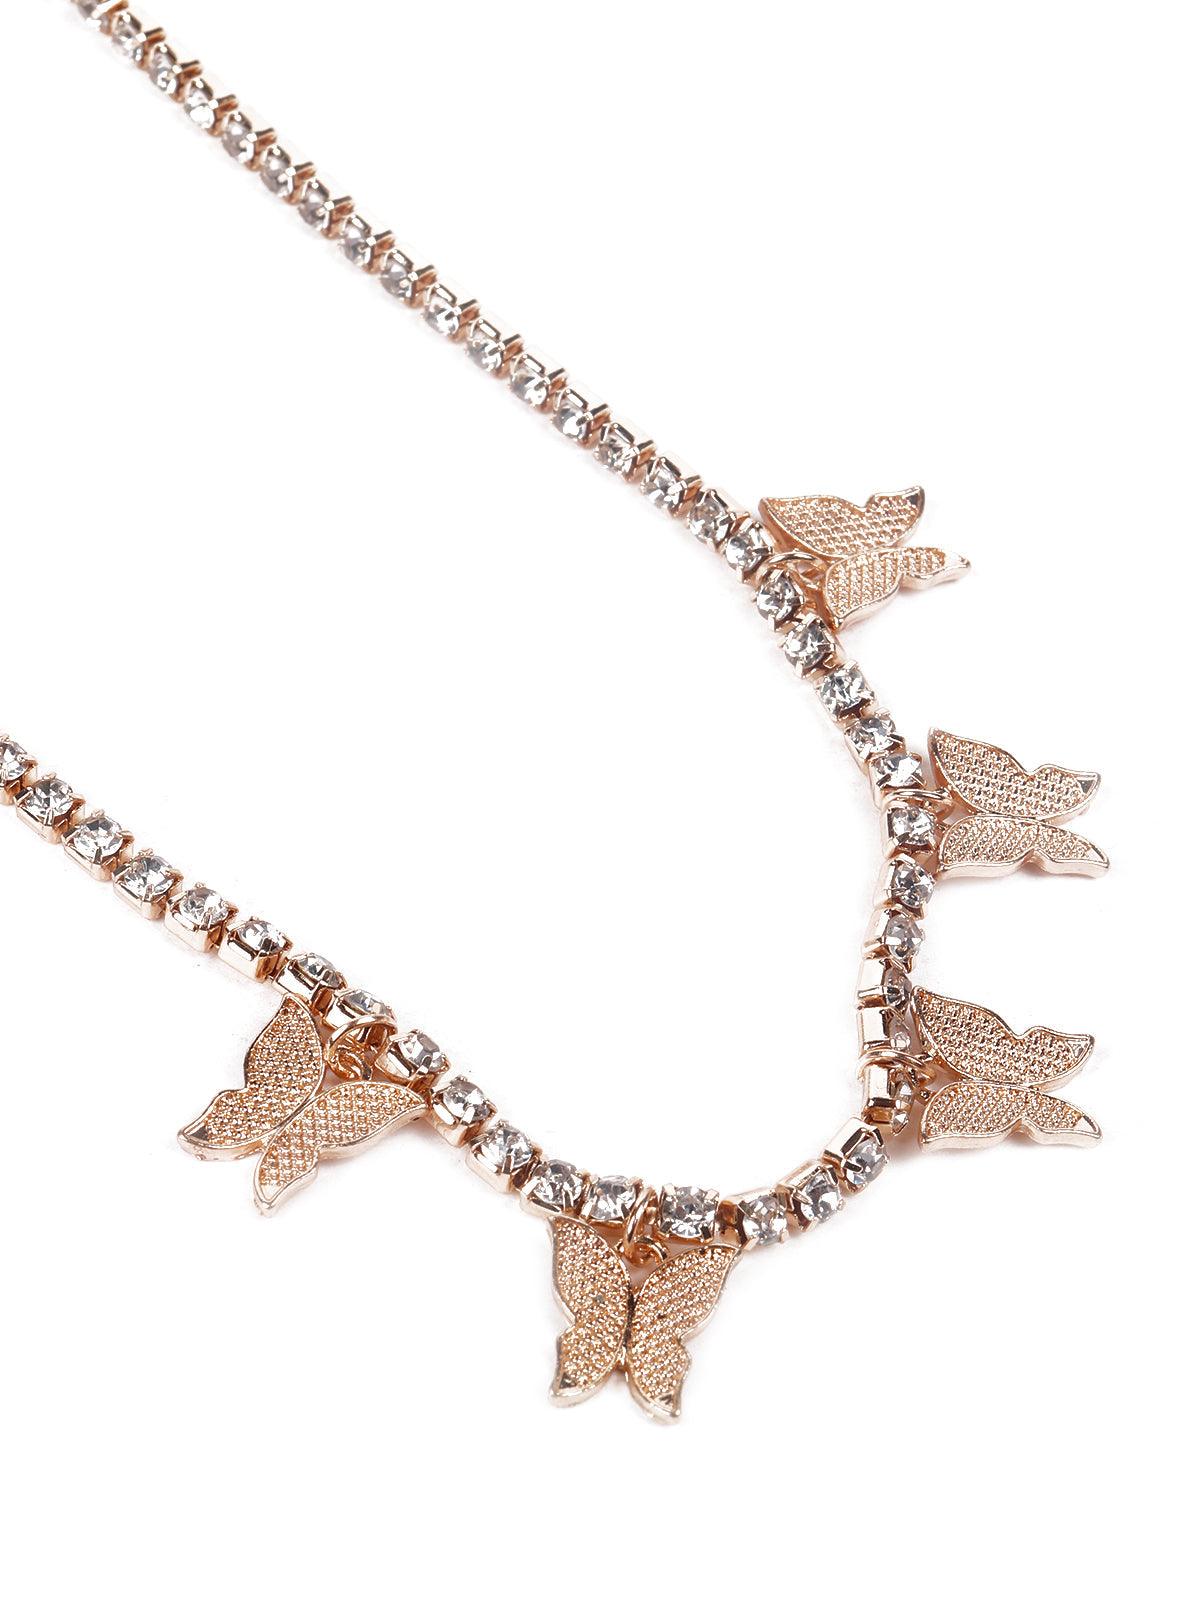 2pcs/set Butterfly Pendant Necklace | SHEIN USA